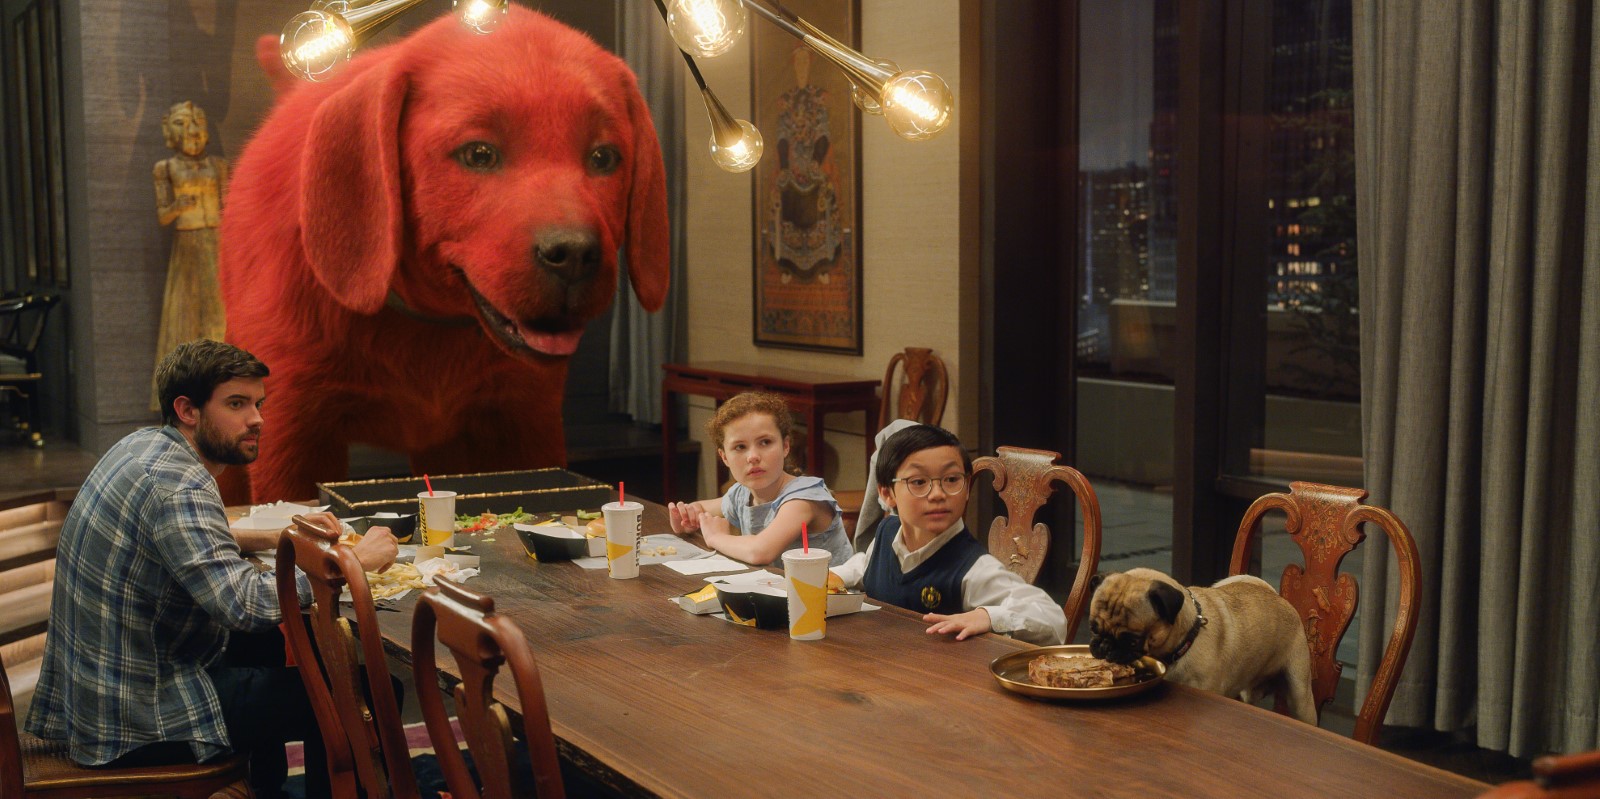 Szenenbild 6 vom Film Clifford der große rote Hund